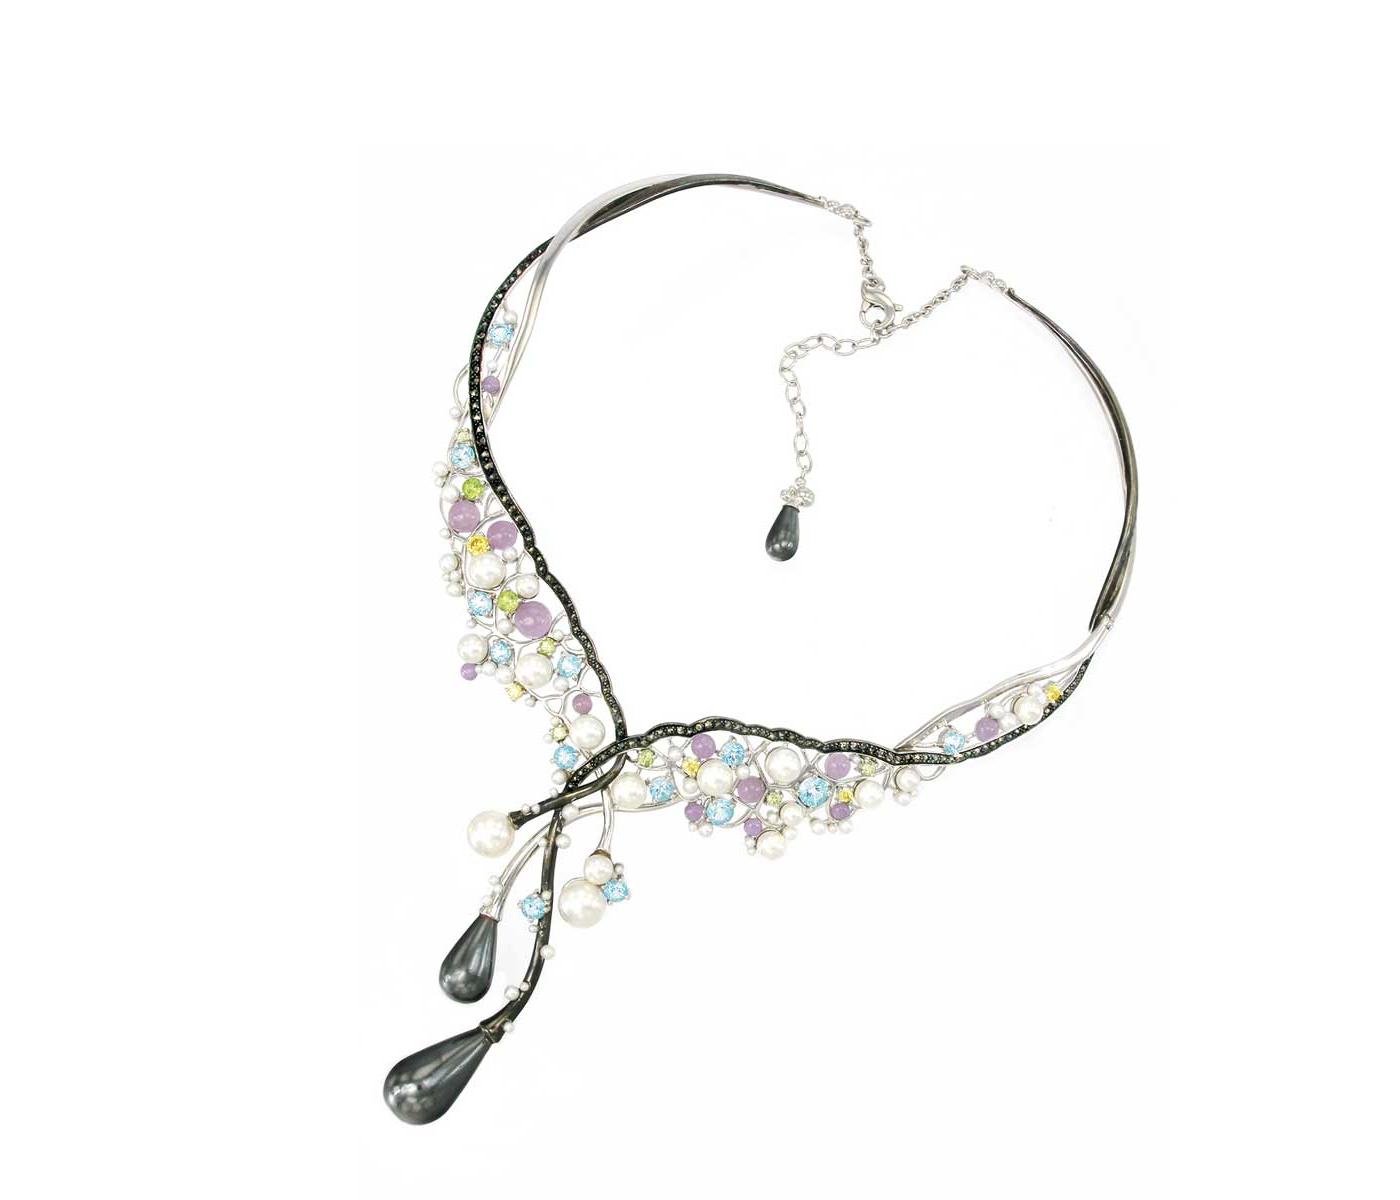 Necklace by Pranda Jewelry